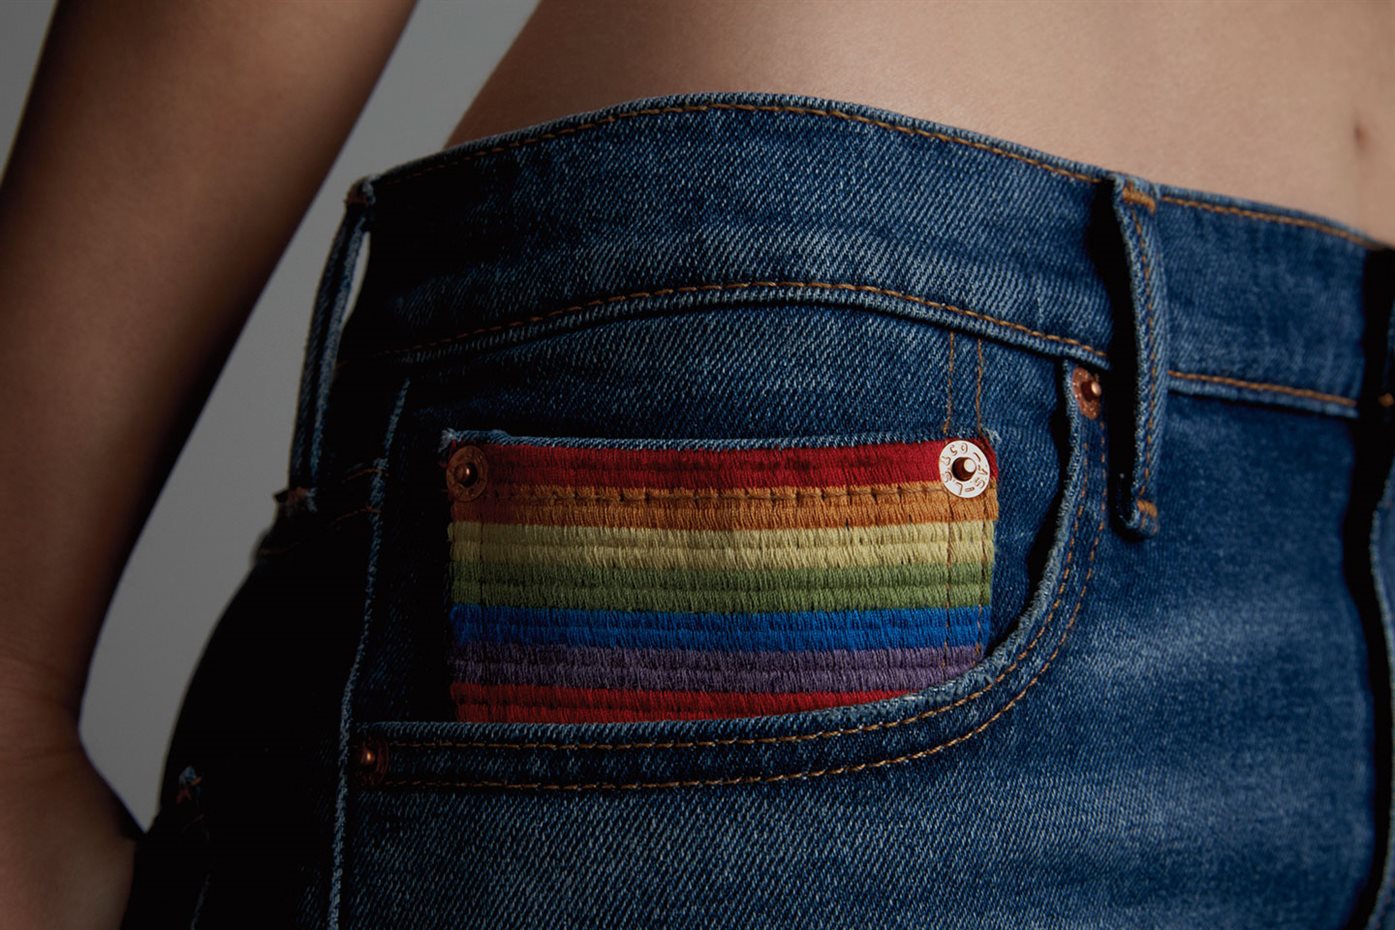 La bandera arco iris decora el bolsillo relojero 